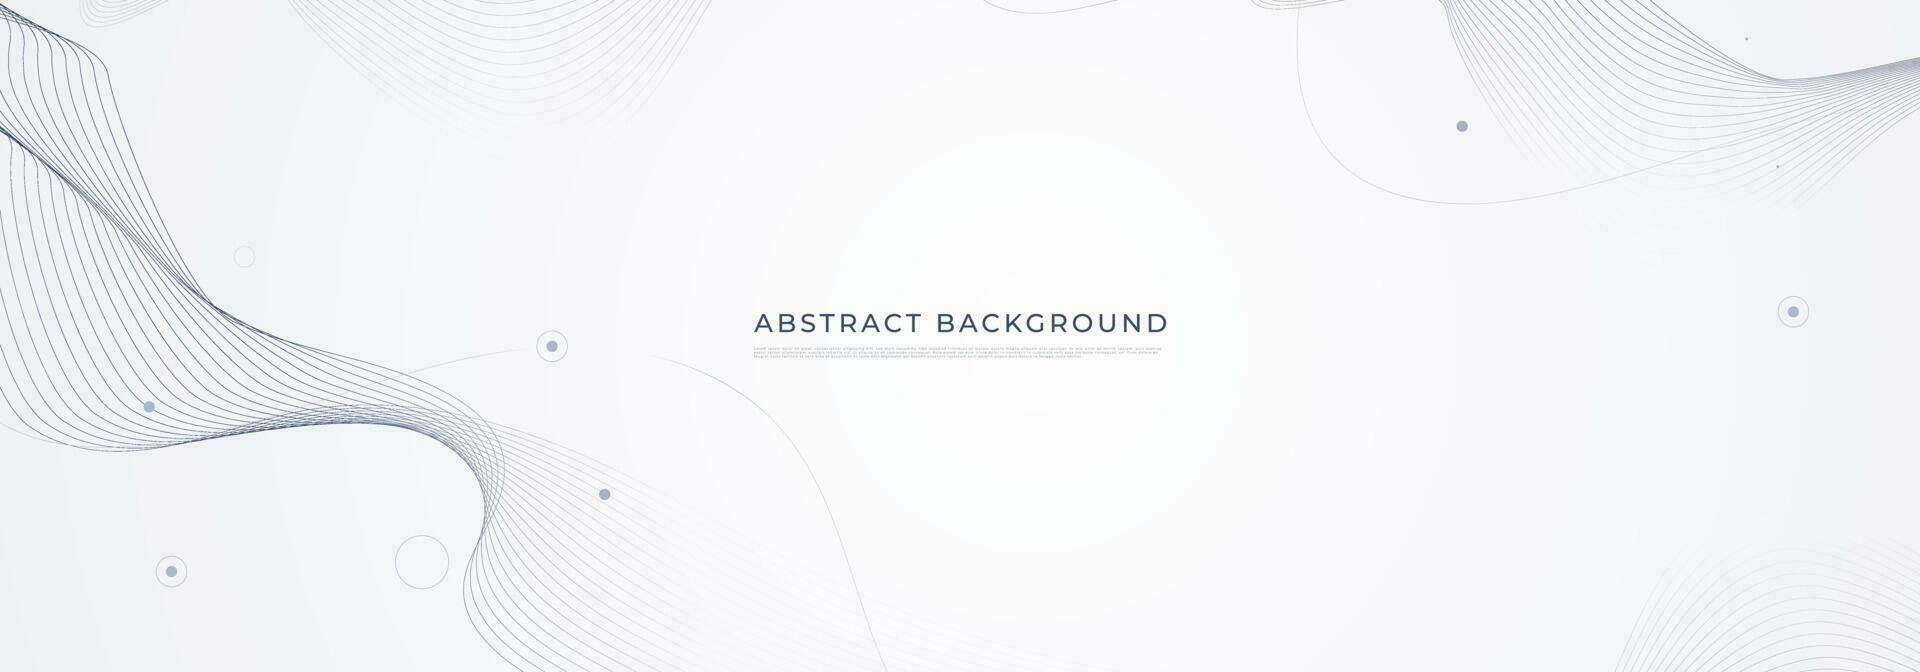 abstrakt vit bakgrund. modern gradient grå banner med vågkurva linje punktelement. elegant koncept för teknik, nätverk och framtida affärsvektorillustration vektor